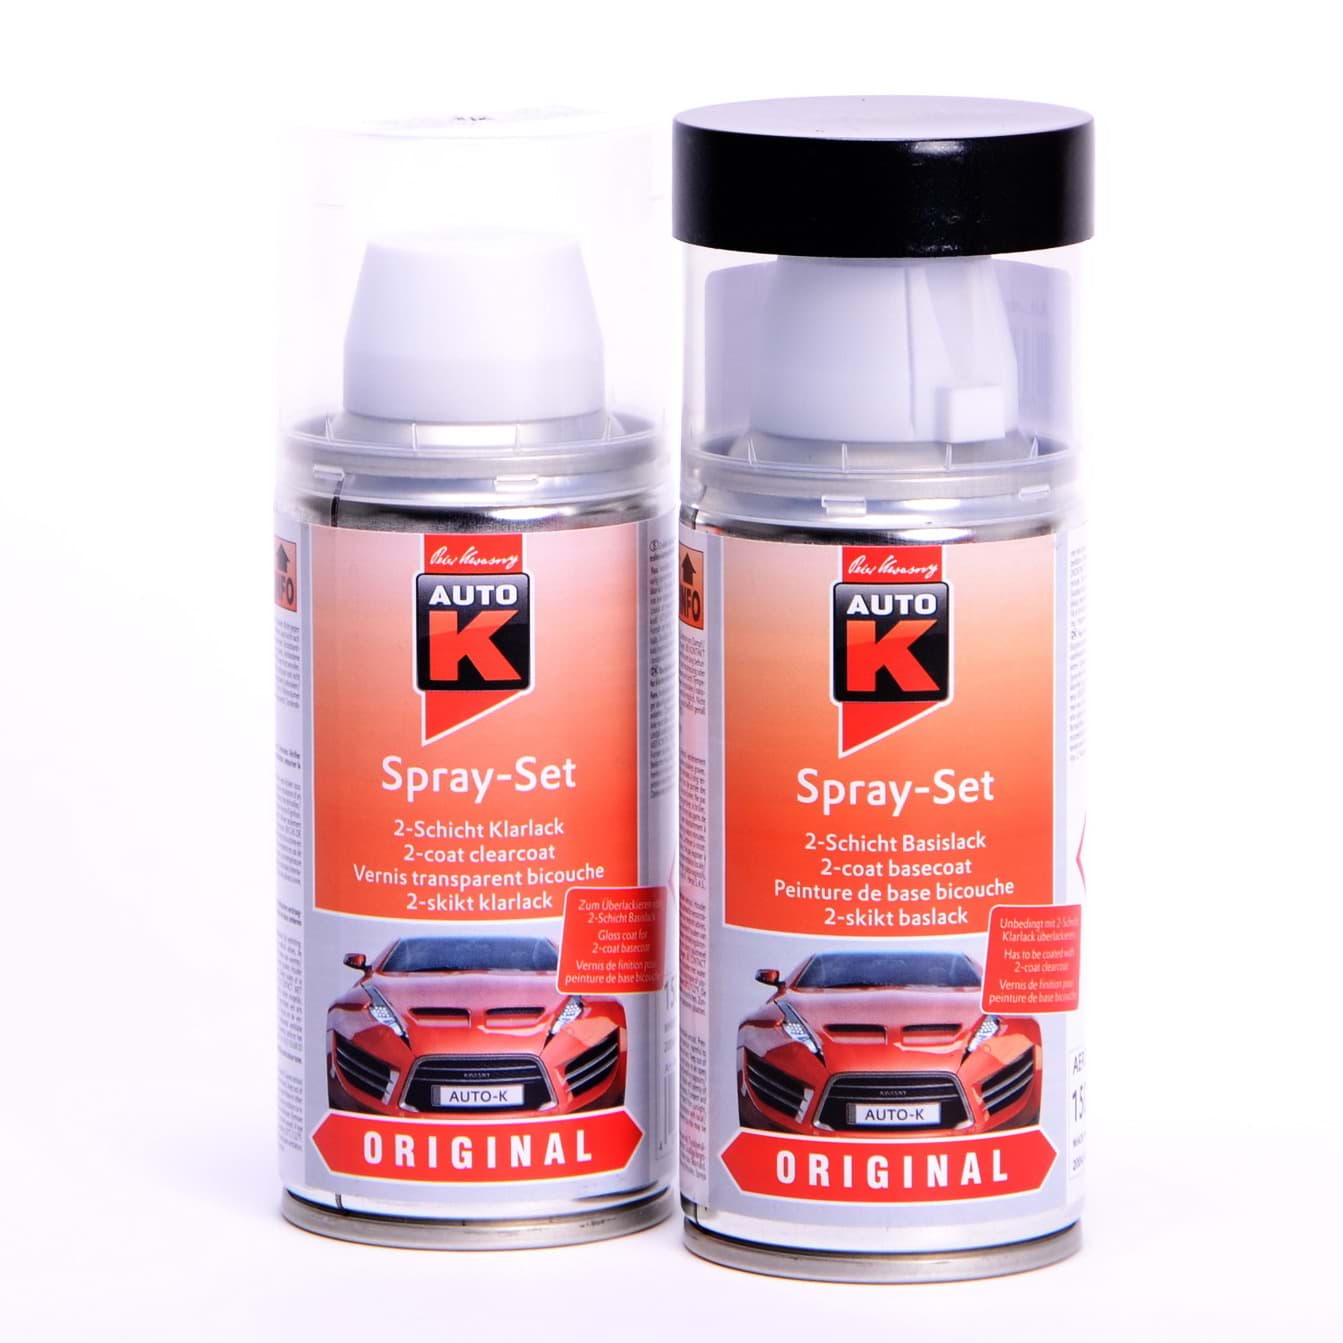 Afbeelding van Auto-K Spray-Set Autolack für Volkswagen, VW, Audi LA7W Reflexsilber met 20920